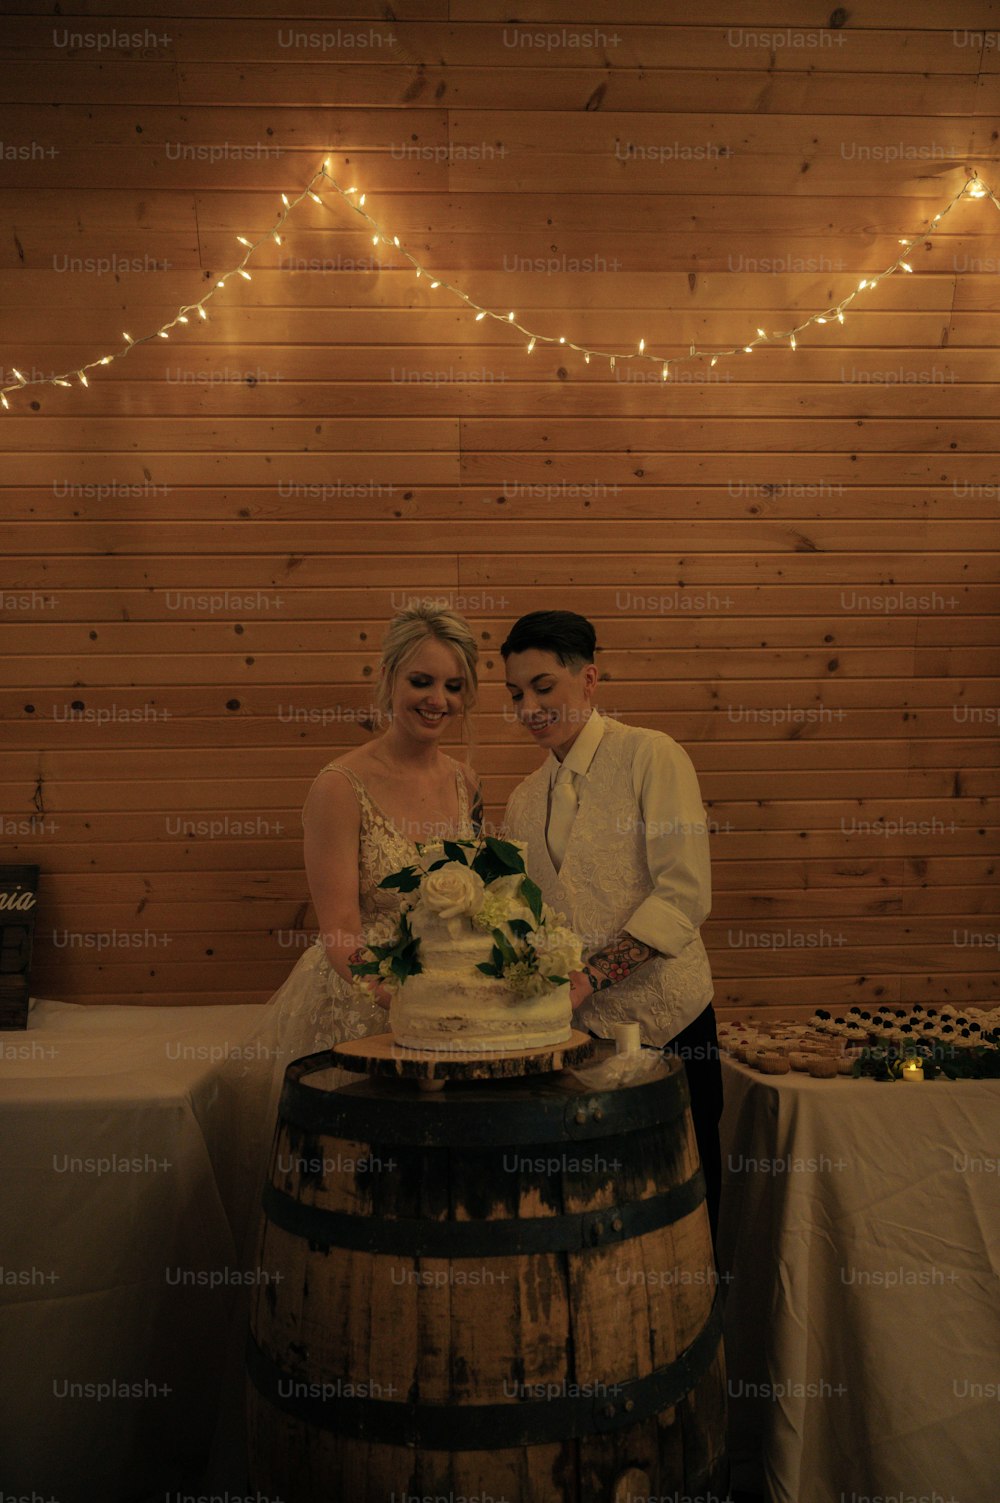 Un uomo e una donna in piedi accanto a un barile con una torta su di esso